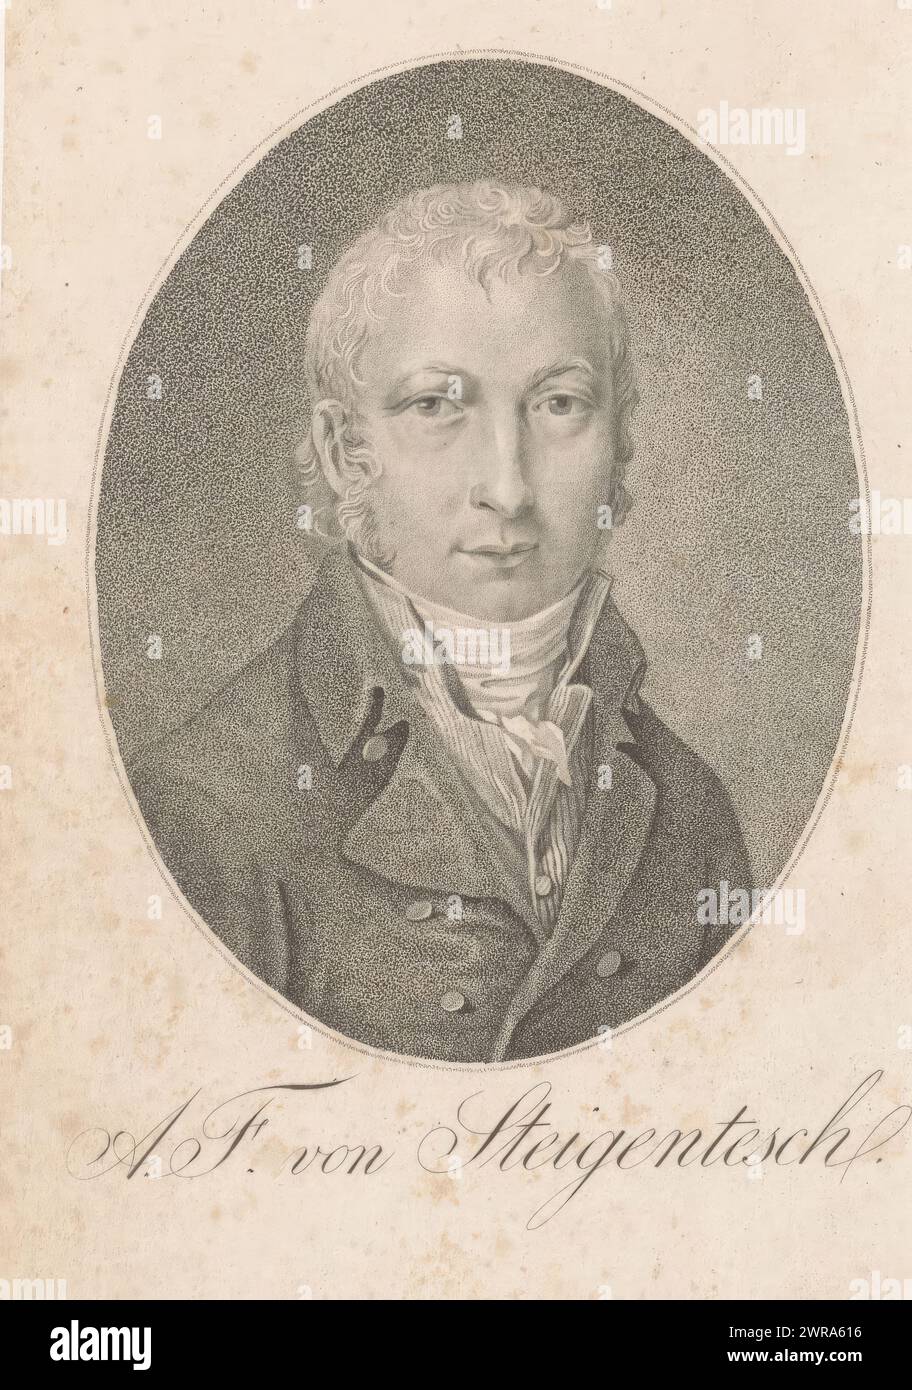 Ritratto di August Ernst Freiherr von Steigentesch, stampatore: Joseph Franz Freiherr von Goez, (forse), 1784 - 1815, carta, altezza 150 mm x larghezza 94 mm, stampa Foto Stock